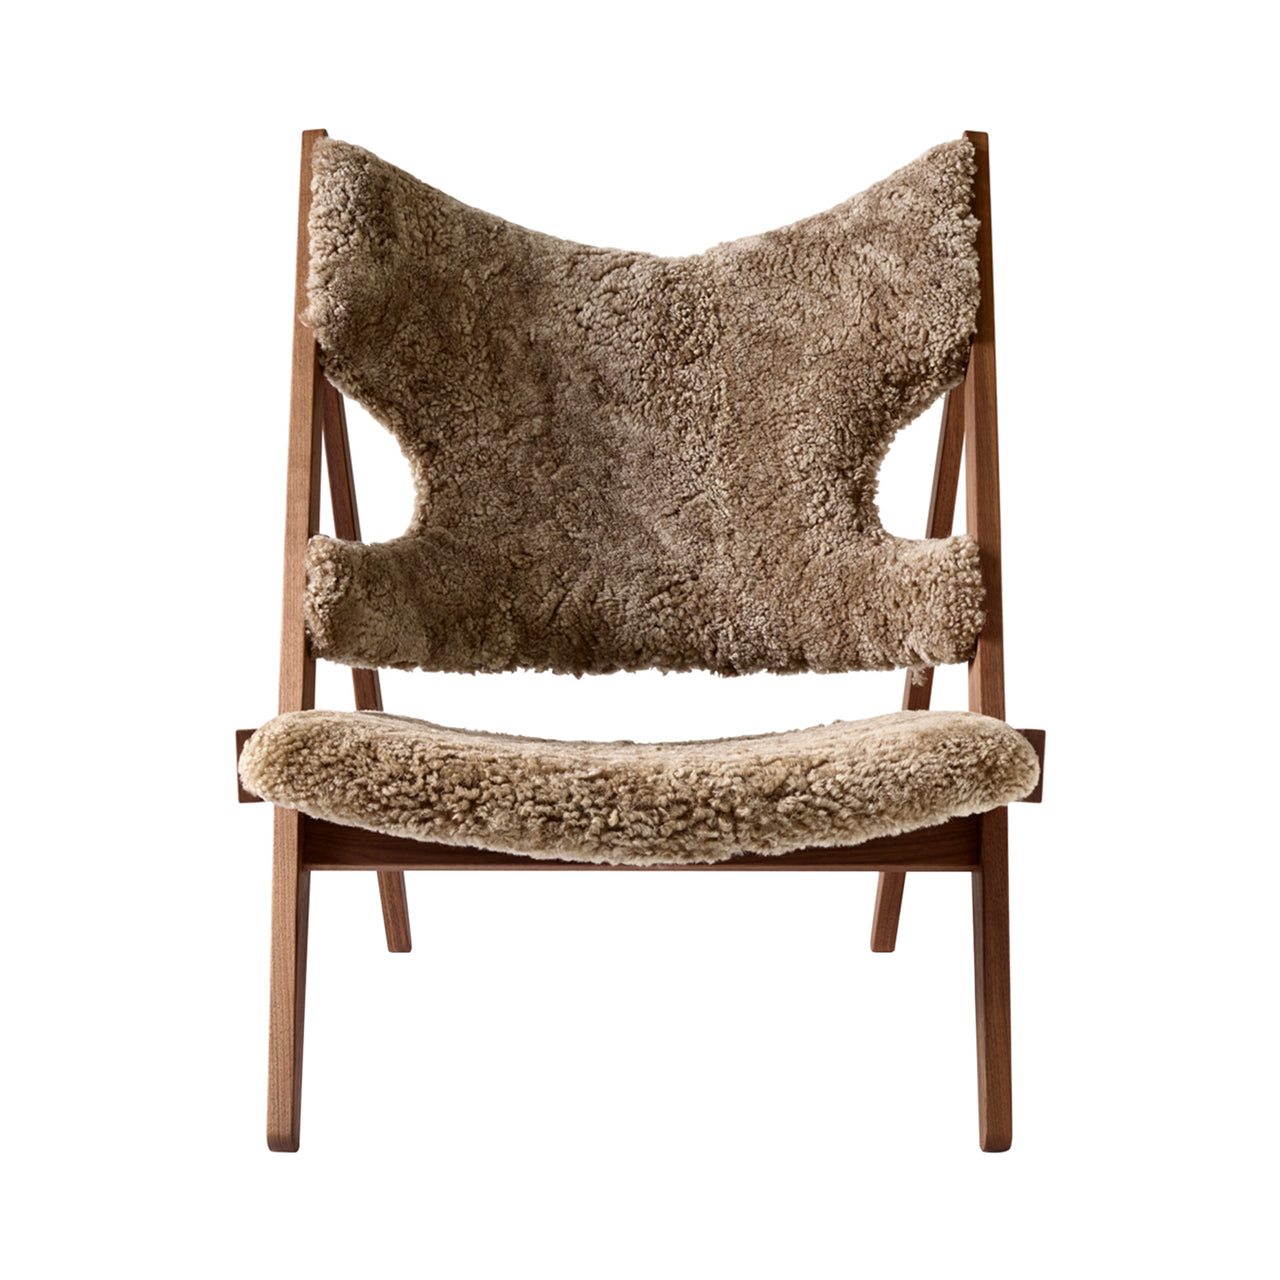 Knitting Lounge Chair: Walnut + Sheepskin Sahara